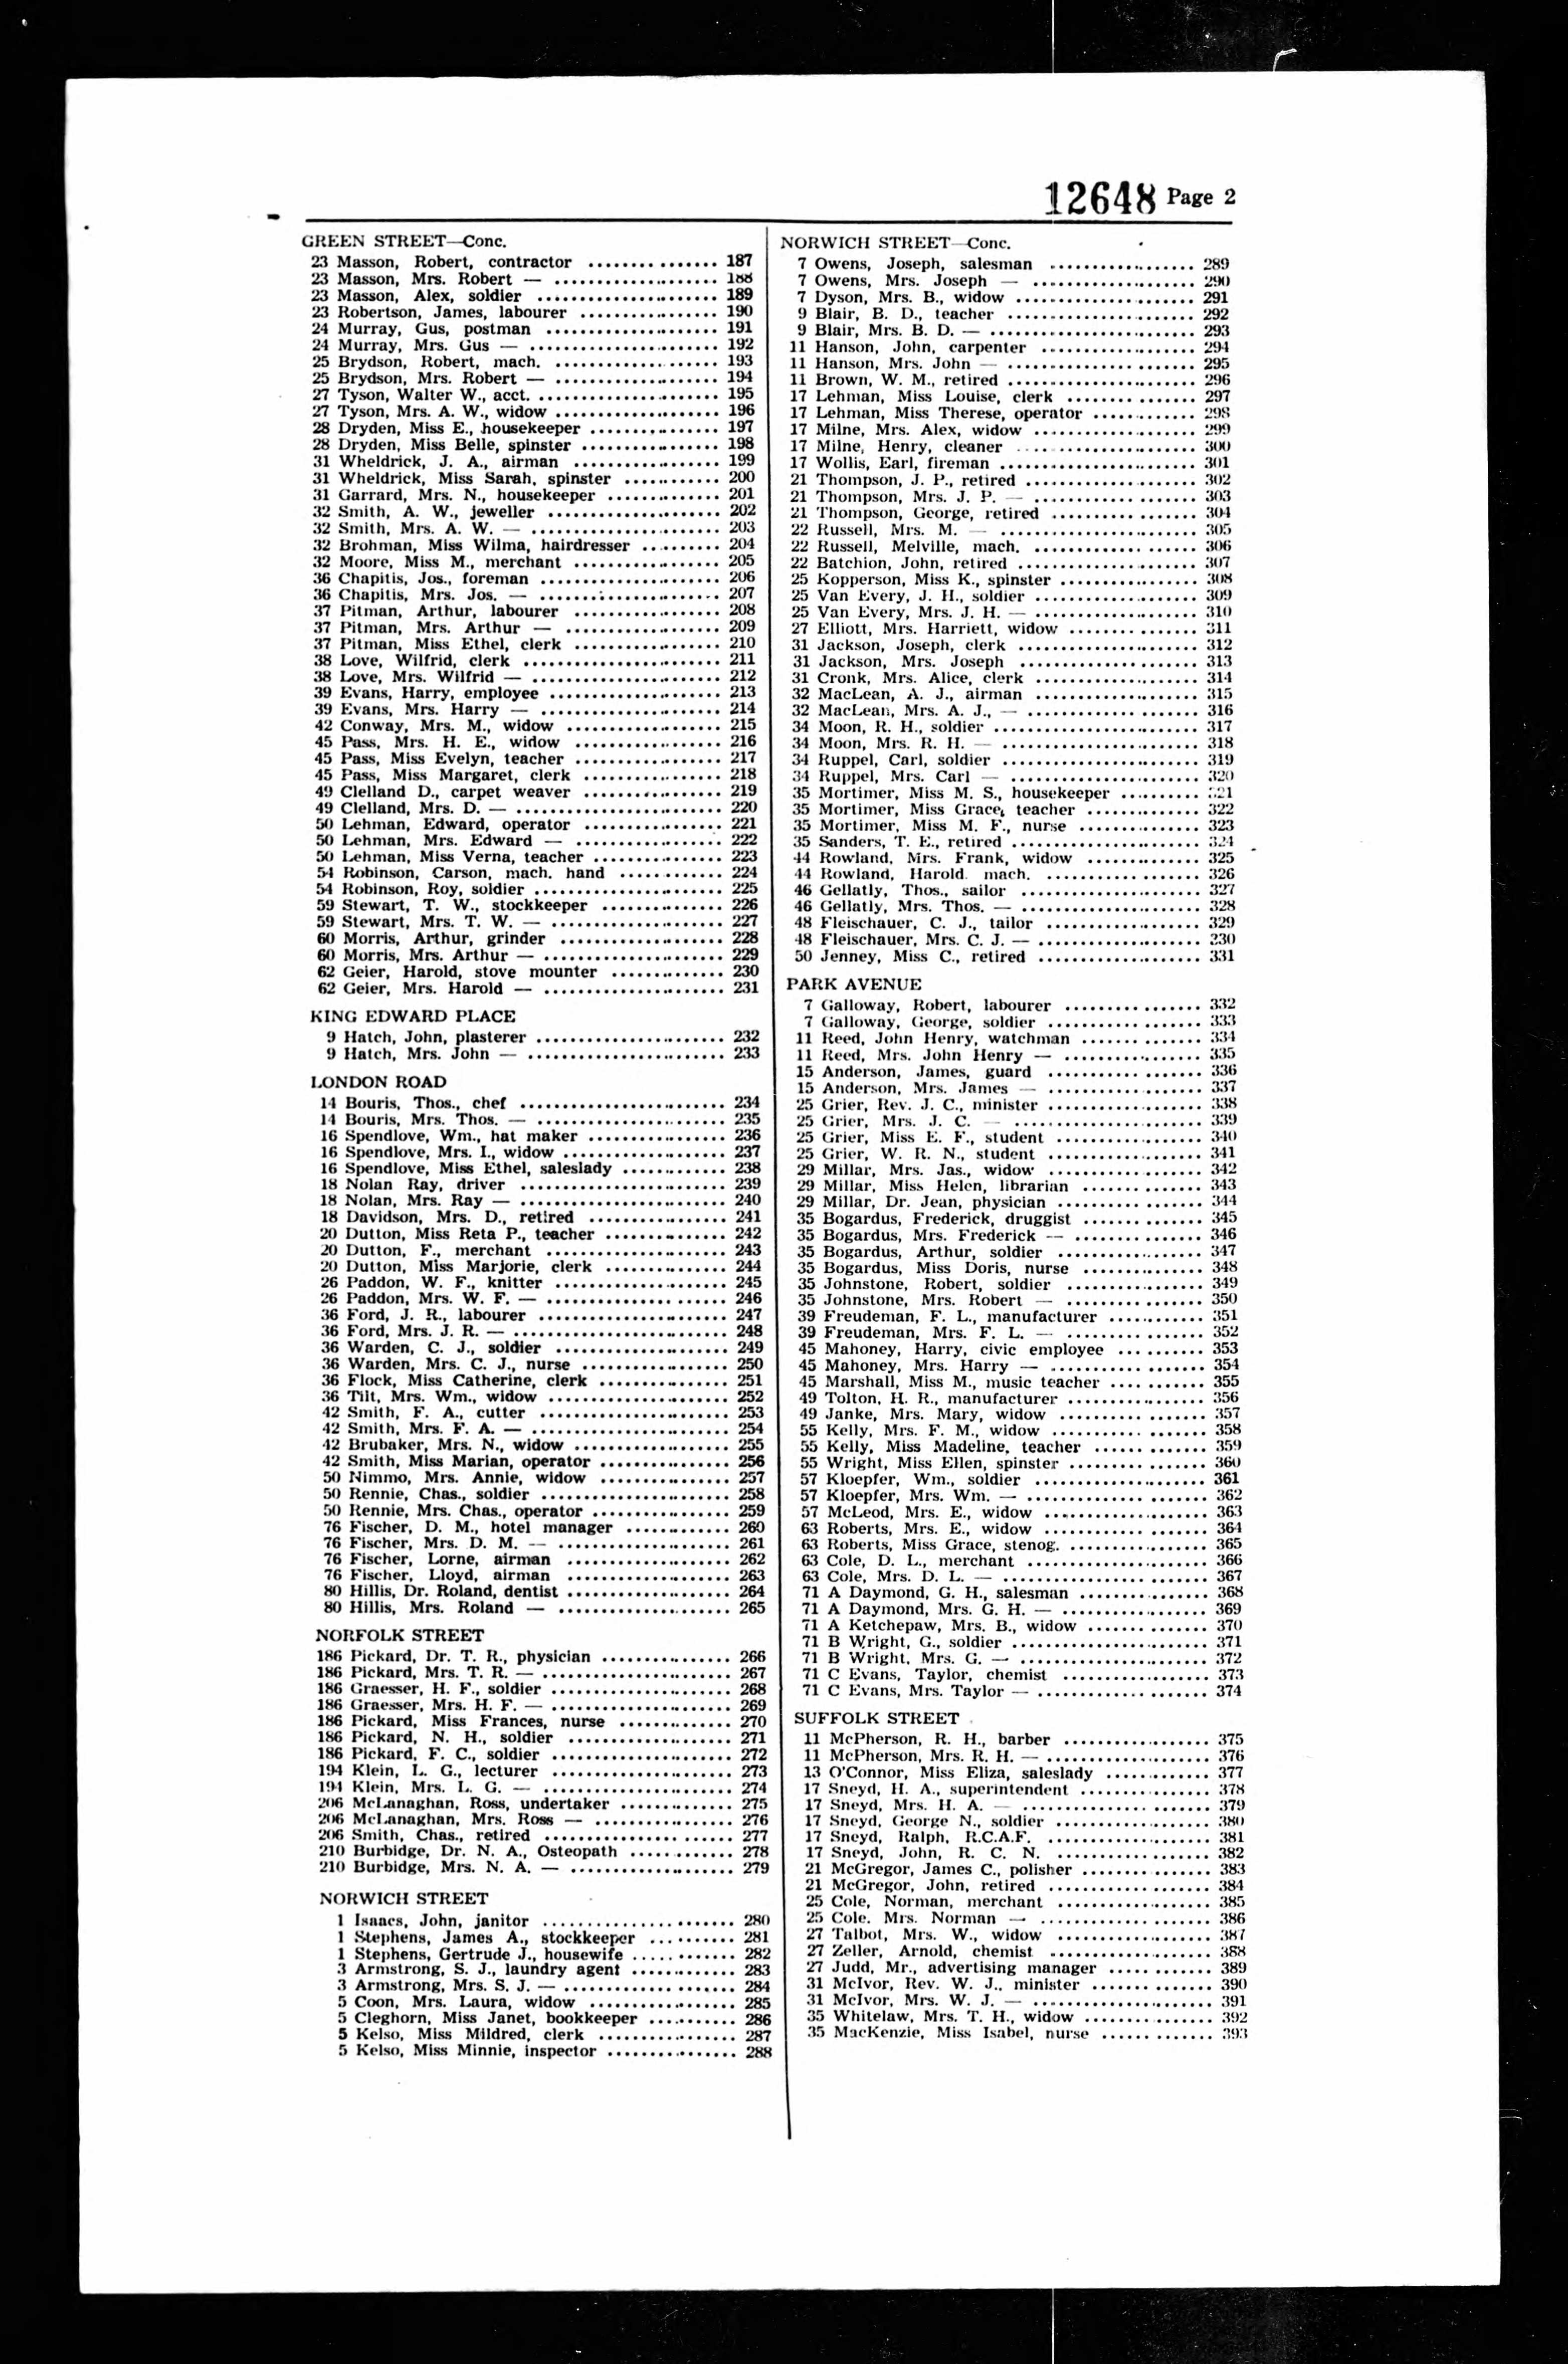 Voters' List, Wellington County, Ontario, 1945